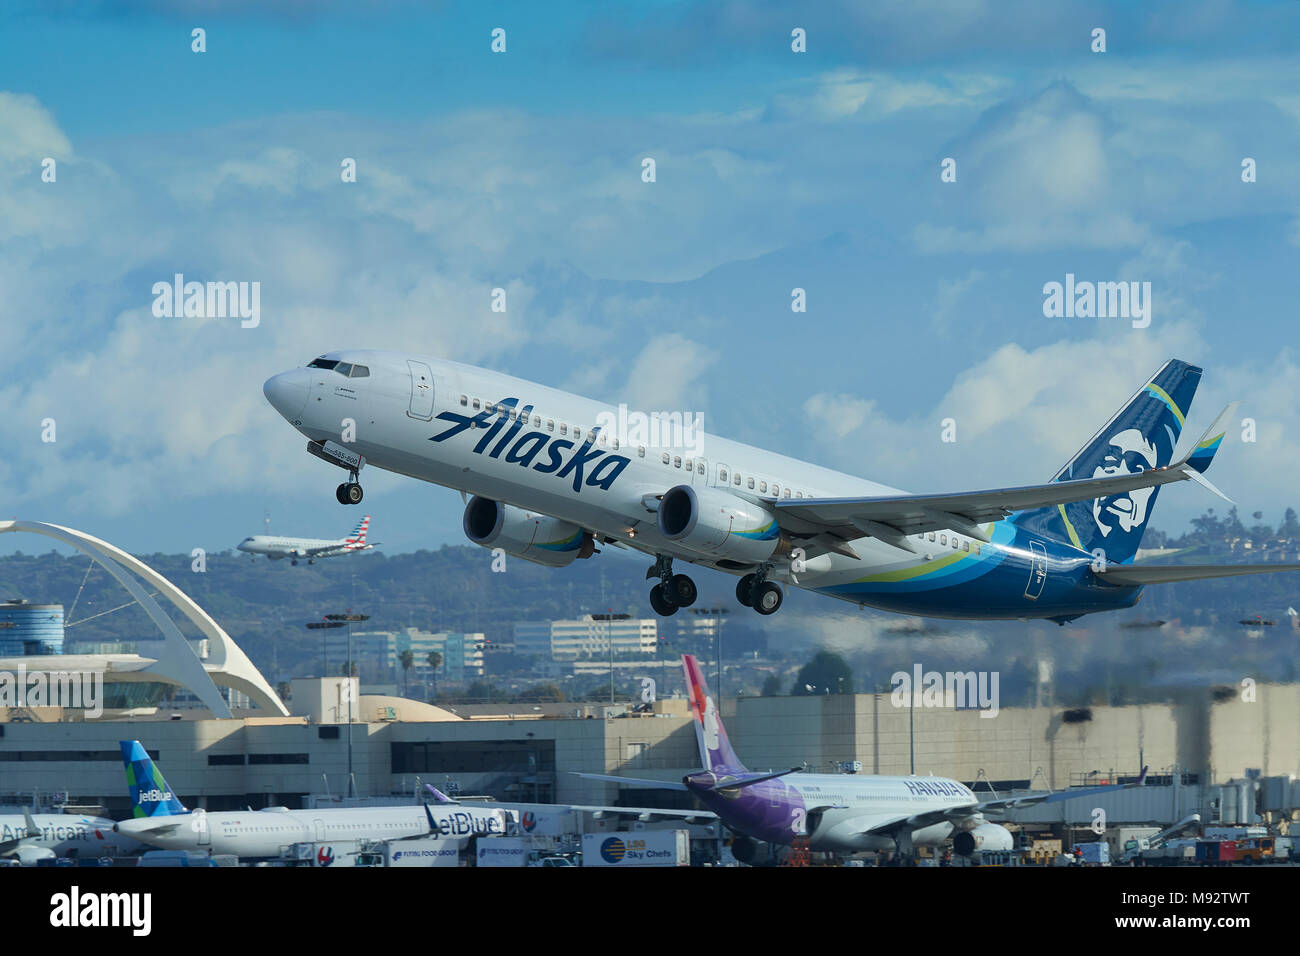 Alaska Airlines Boeing 737-800 décolle de l'Aéroport International de Los Angeles, LAX. L'atterrissage d'un avion de ligne à l'arrière-plan. Californie, USA. Banque D'Images